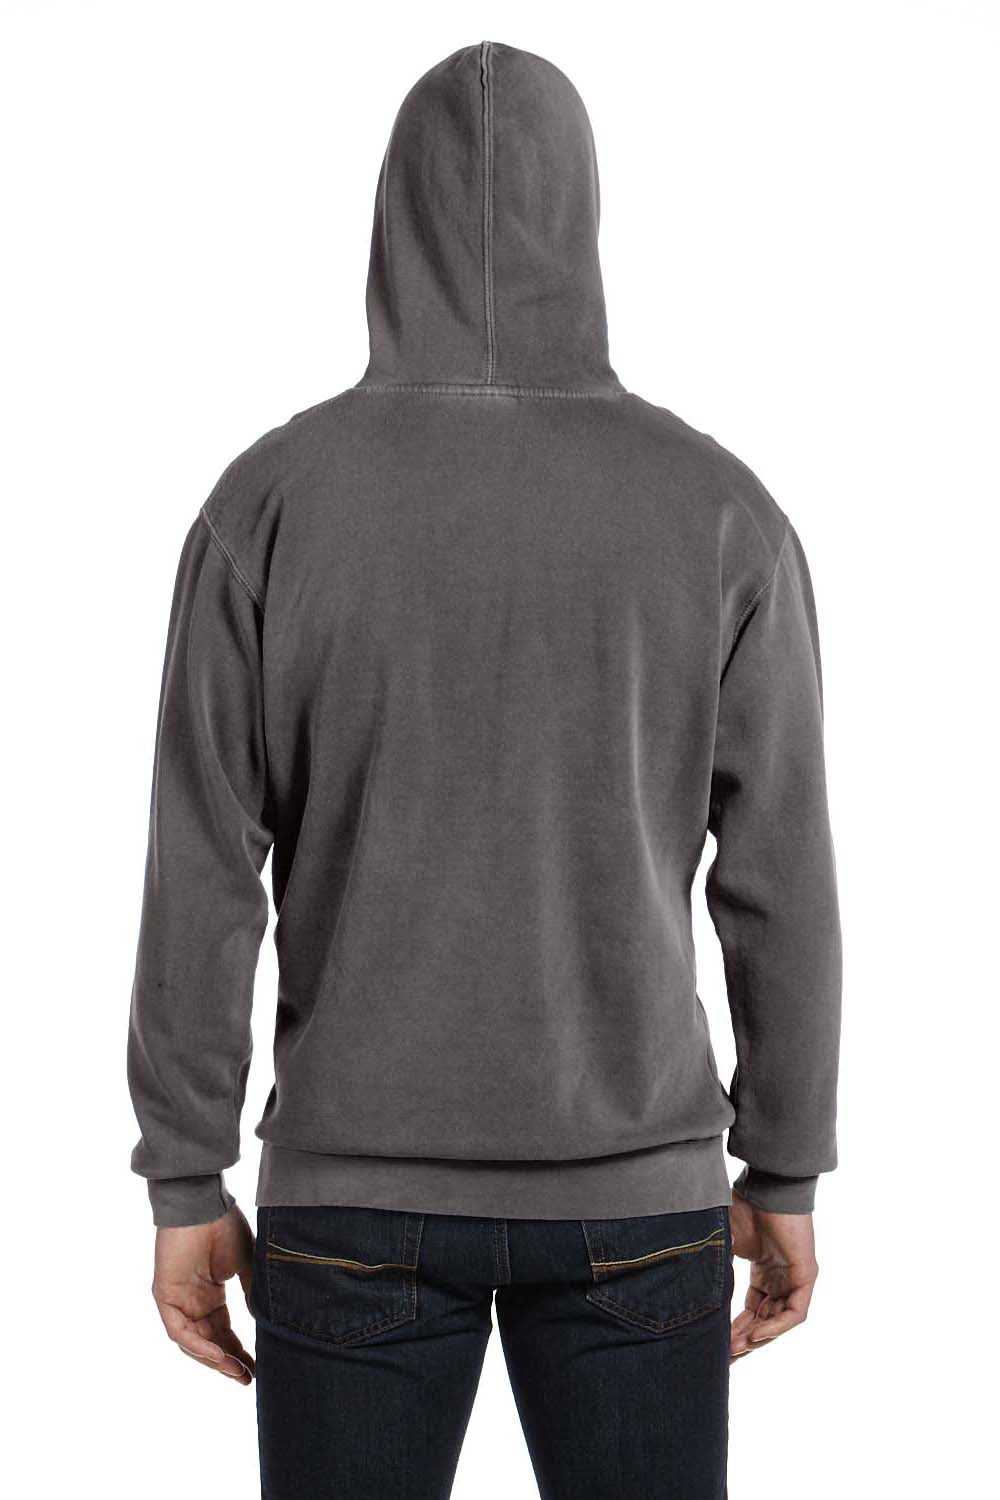 Comfort Colors 1567 Mens Hooded Sweatshirt Hoodie Pepper Grey Back